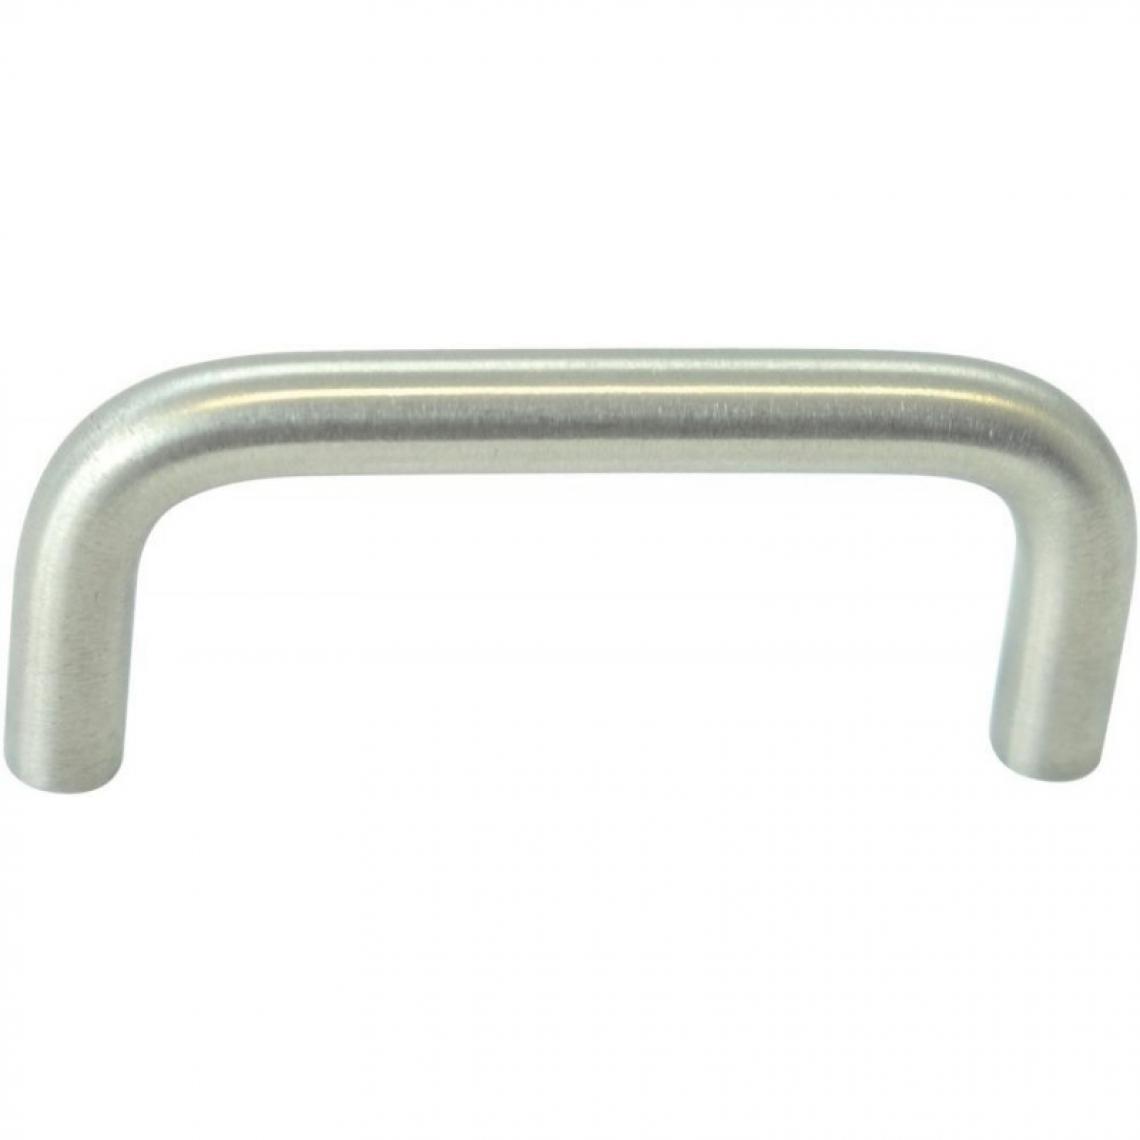 marque generique - Poignée arc acier inoxidable 10x160 - Poignée de porte